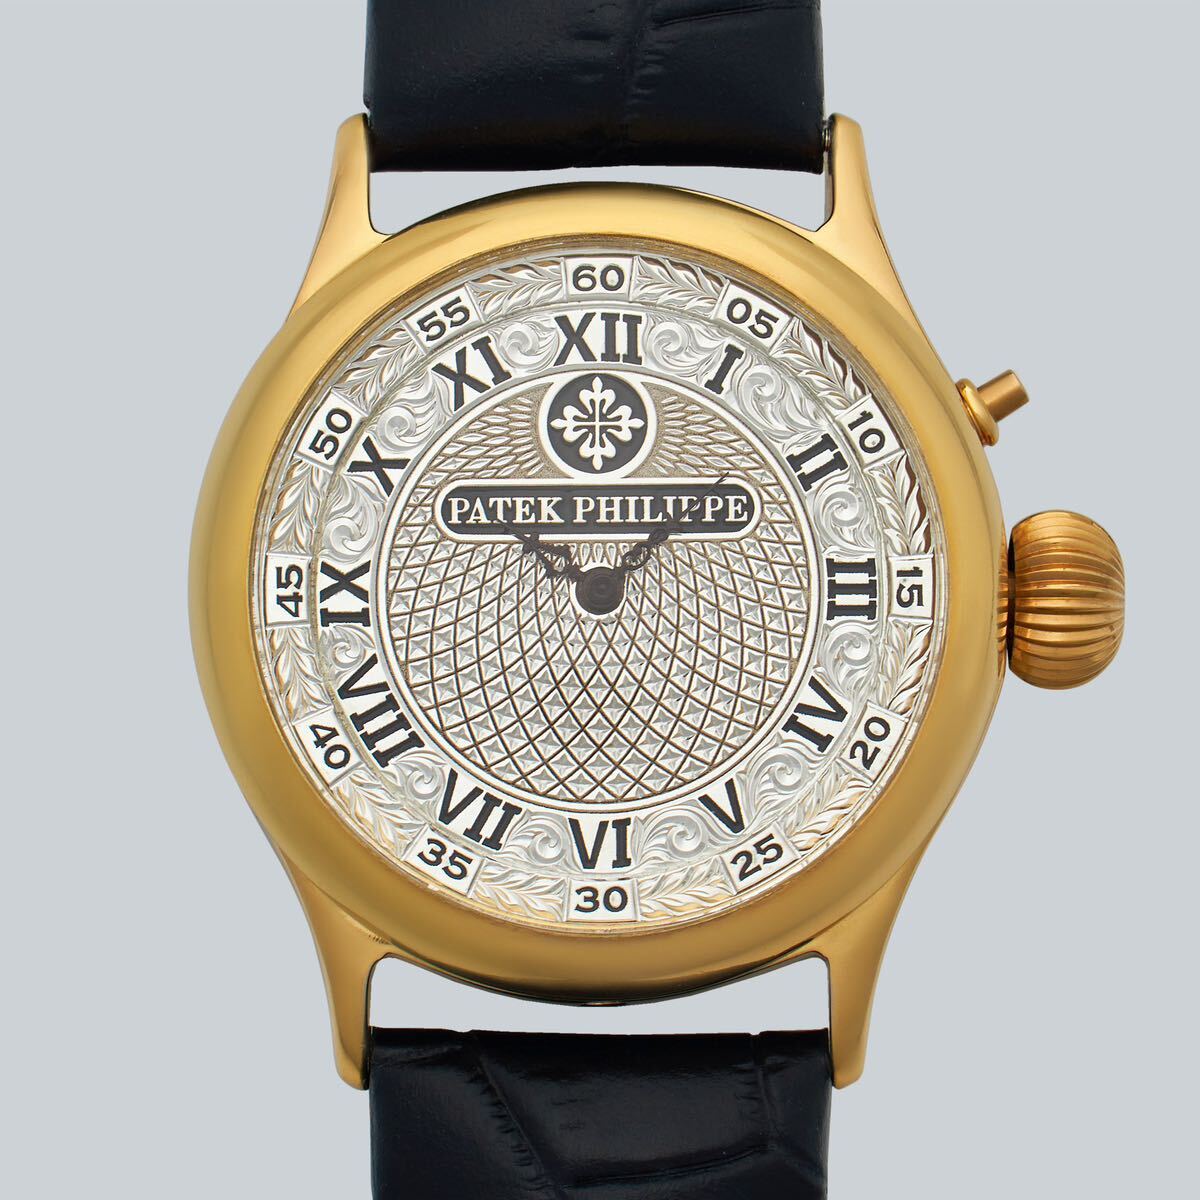 アンティーク Marriage watch Patek Philippe 懐中時計をアレンジした40mmのメンズ腕時計 半年保証 手巻き スケルトンの画像1